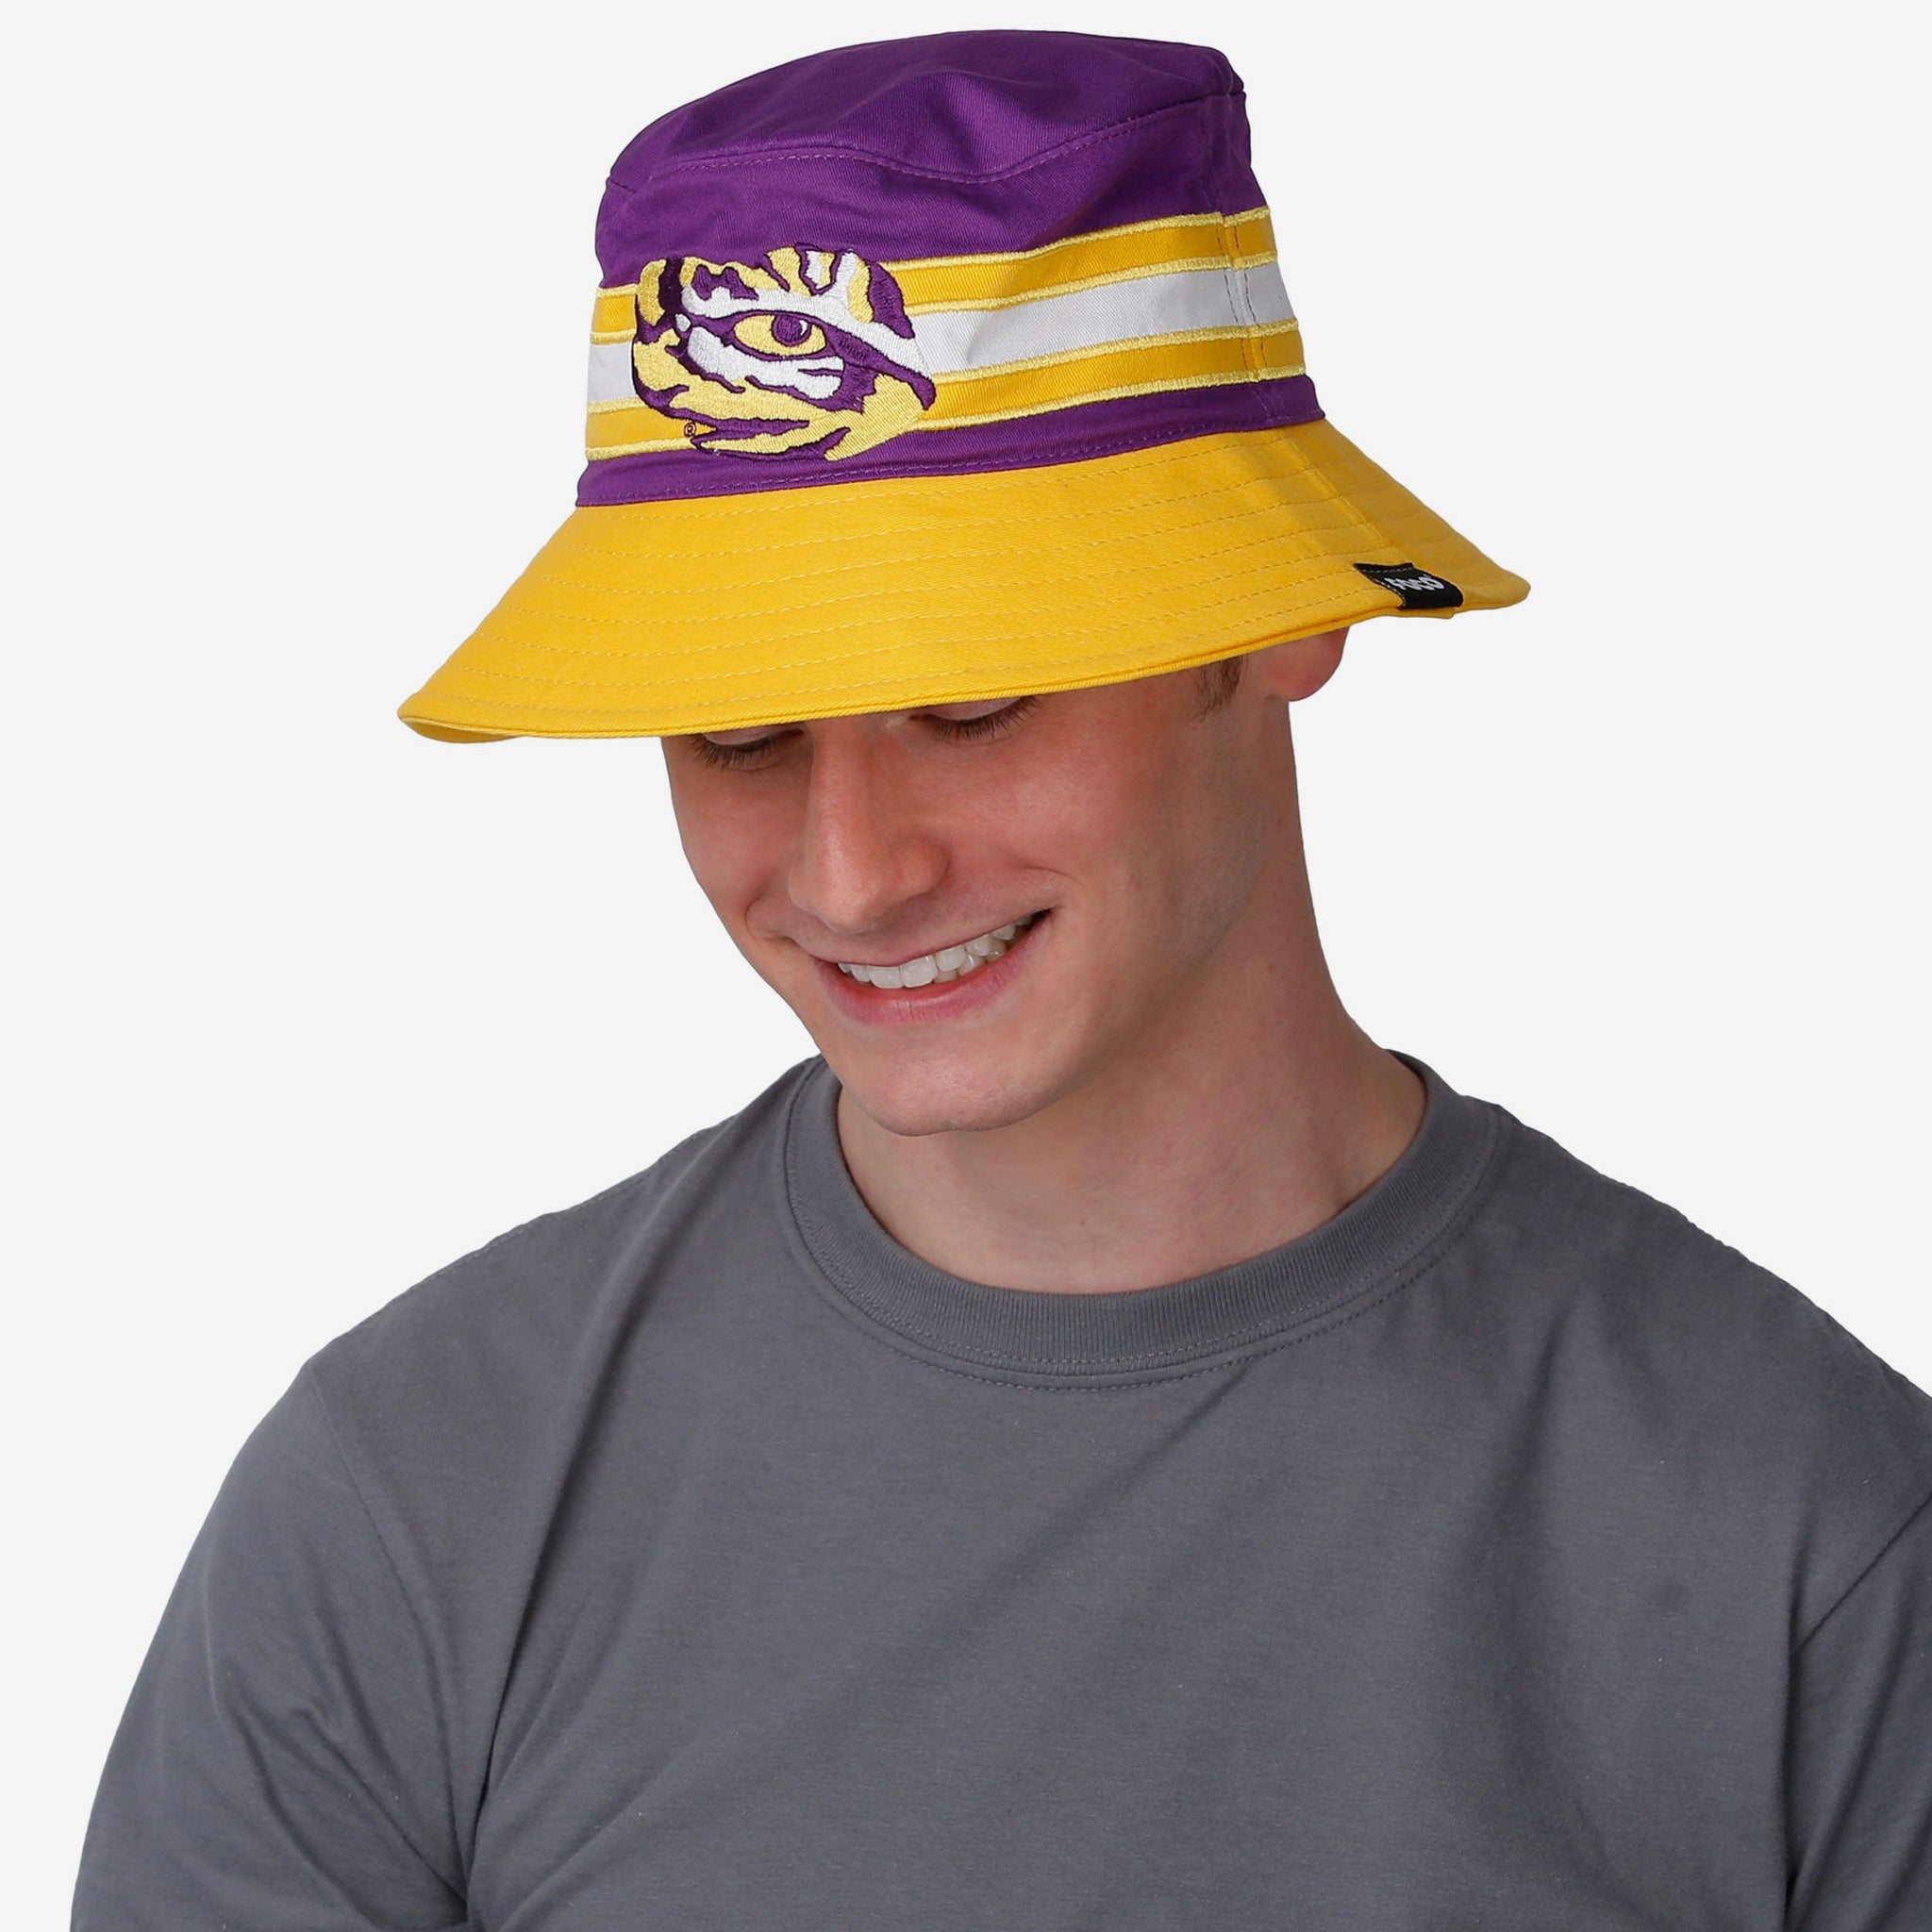 LSU Tigers Unisex Adult NCAA Fan Cap, Hats for sale